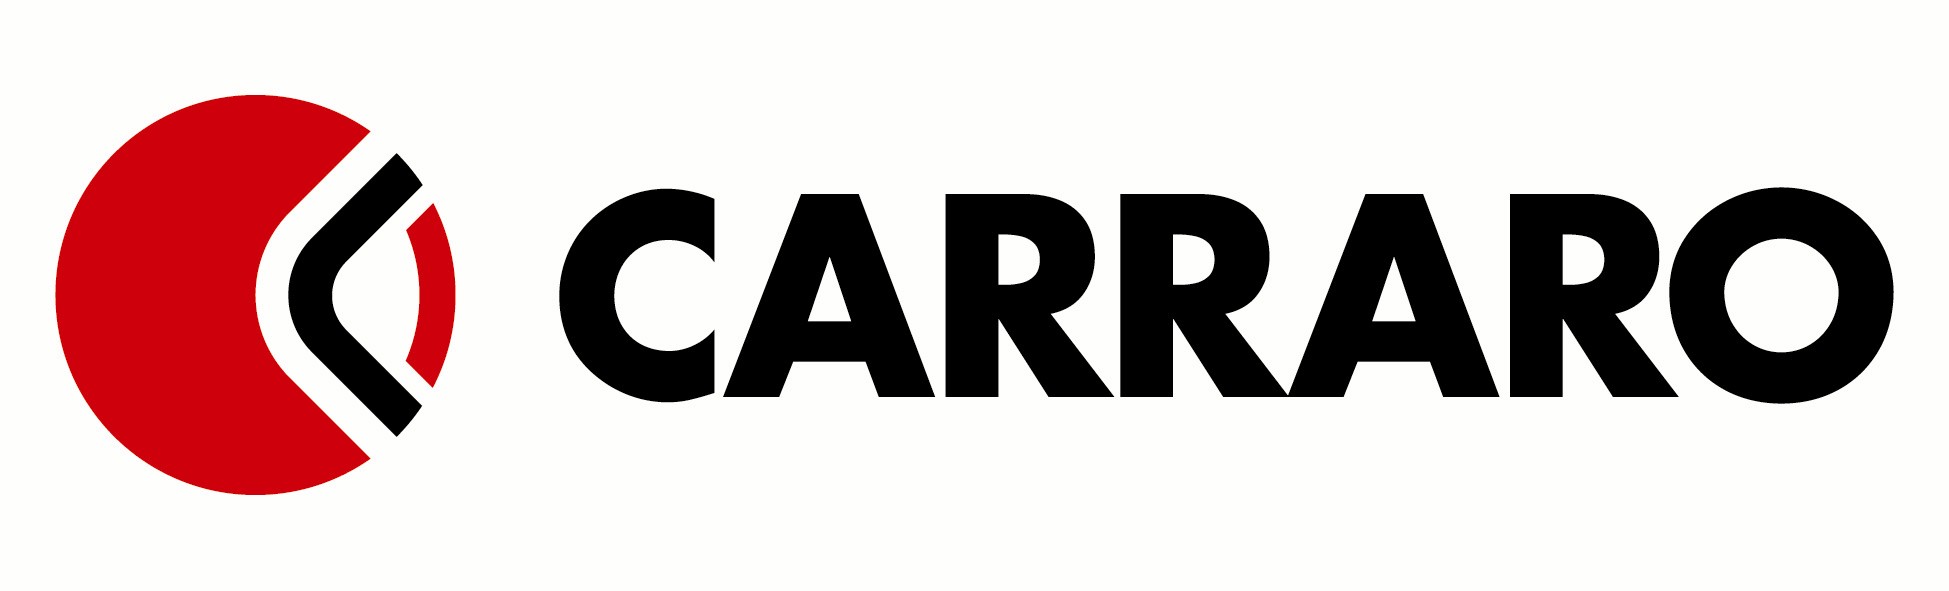 Carraro Logo photo - 1